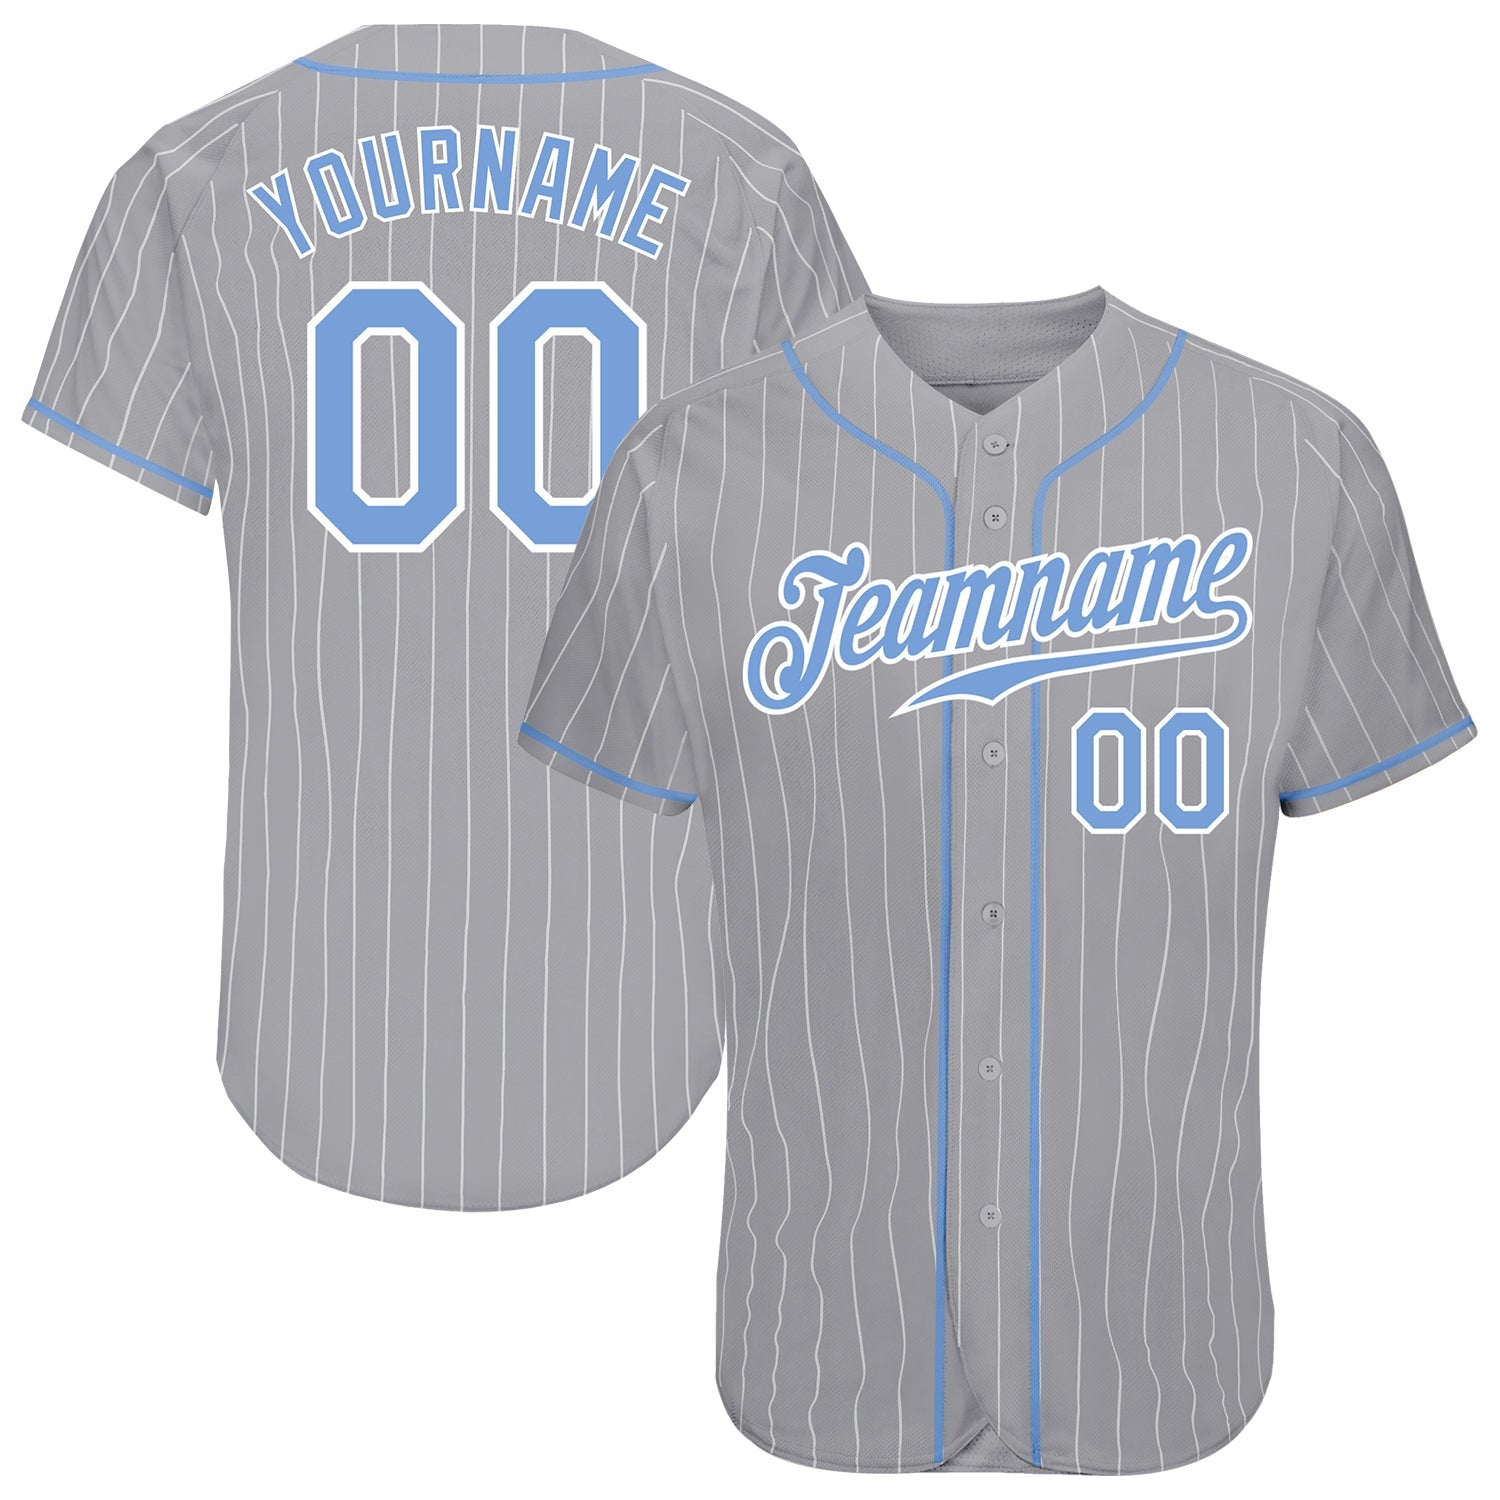 Camisa de beisebol autêntica cinza branca listrada azul-branca personalizada